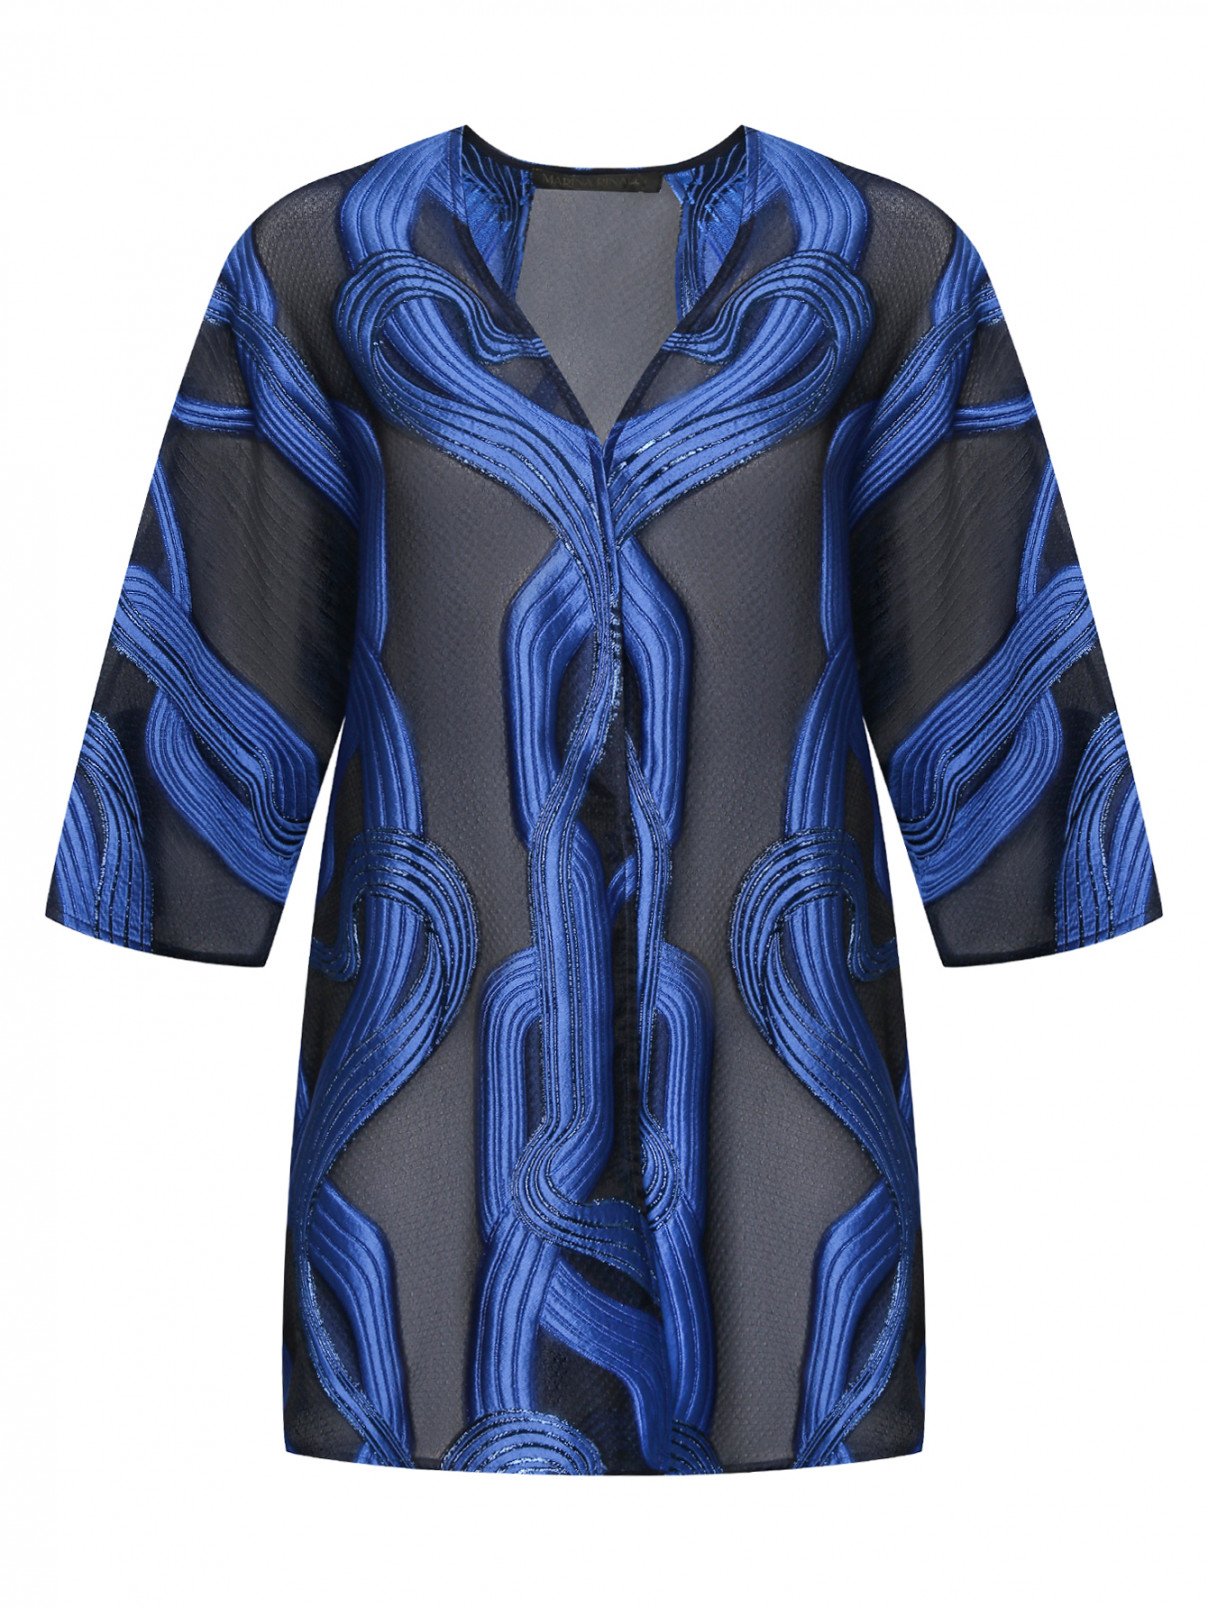 Блуза с фактурным узором Marina Rinaldi  –  Общий вид  – Цвет:  Узор